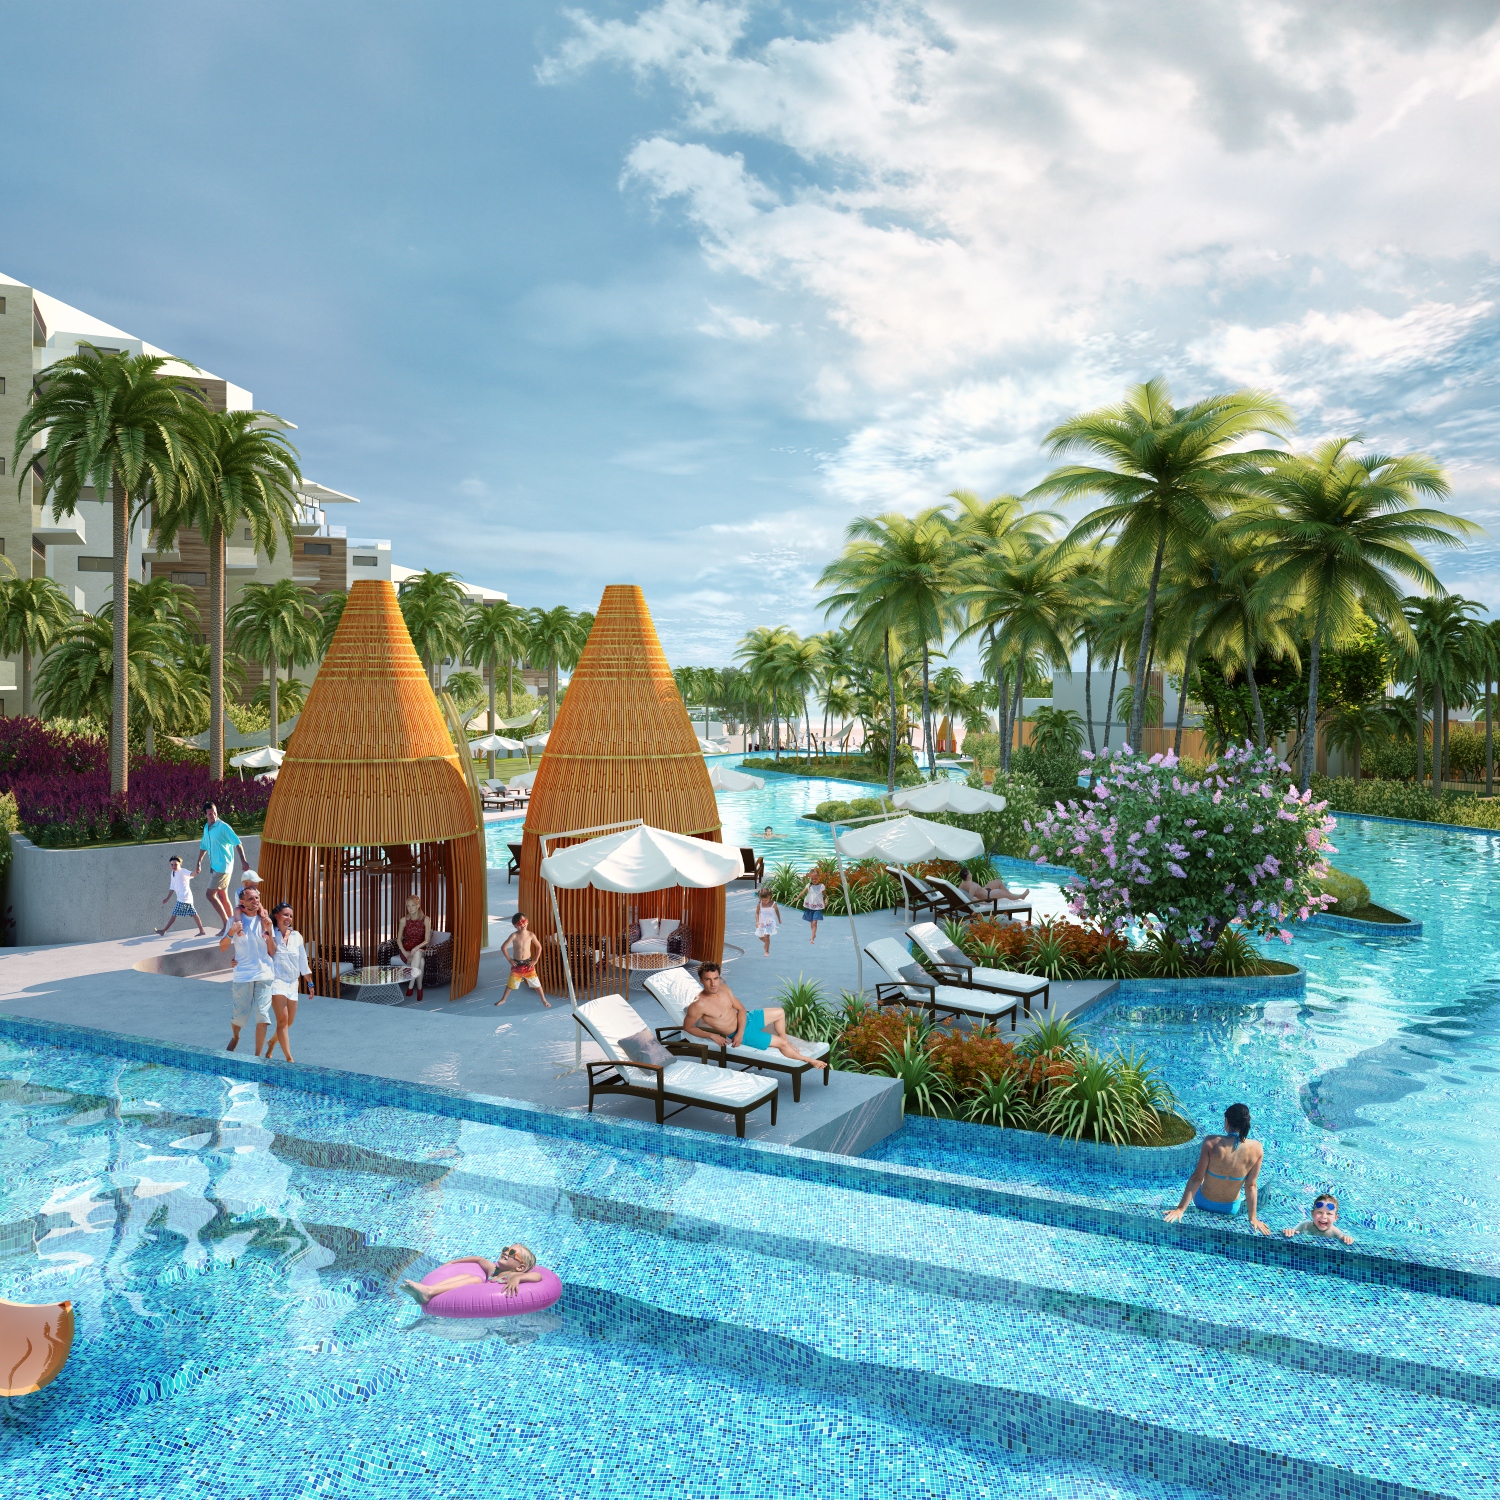 Cơ hội trở thành chủ nhân của căn hộ nghỉ dưỡng Premier Residences Phu Quoc Emerald Bay hoàn toàn trong tầm tay của nhiều nhà đầu tư bởi mức giá vô cùng hợp lý.  - img_201512101415455096 - Sức hấp dẫn từ căn hộ nghỉ dưỡng Premier Residences Phu Quoc